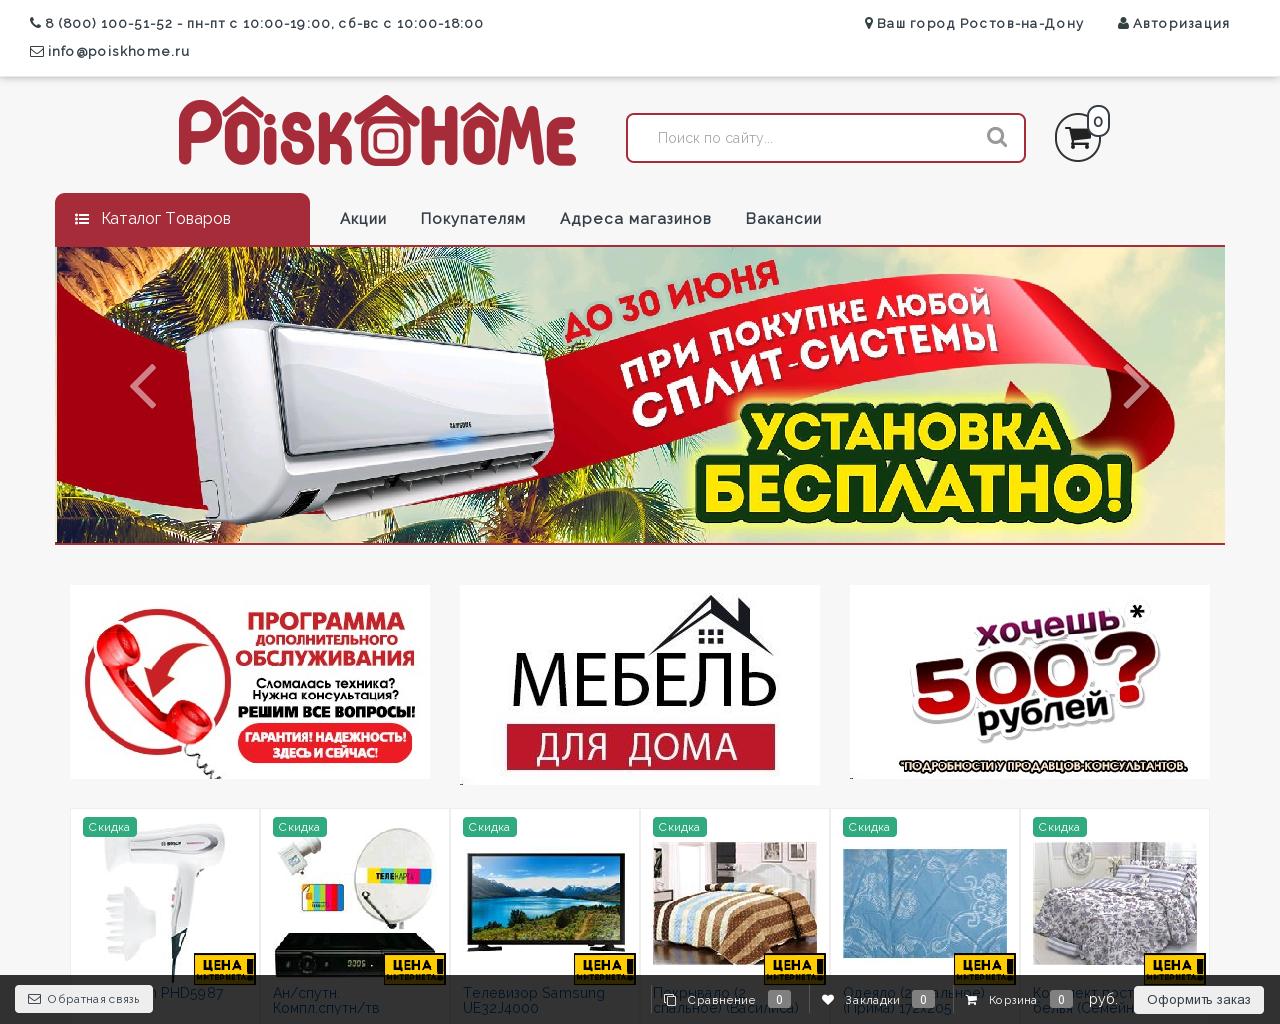 Изображение сайта poiskhome.ru в разрешении 1280x1024